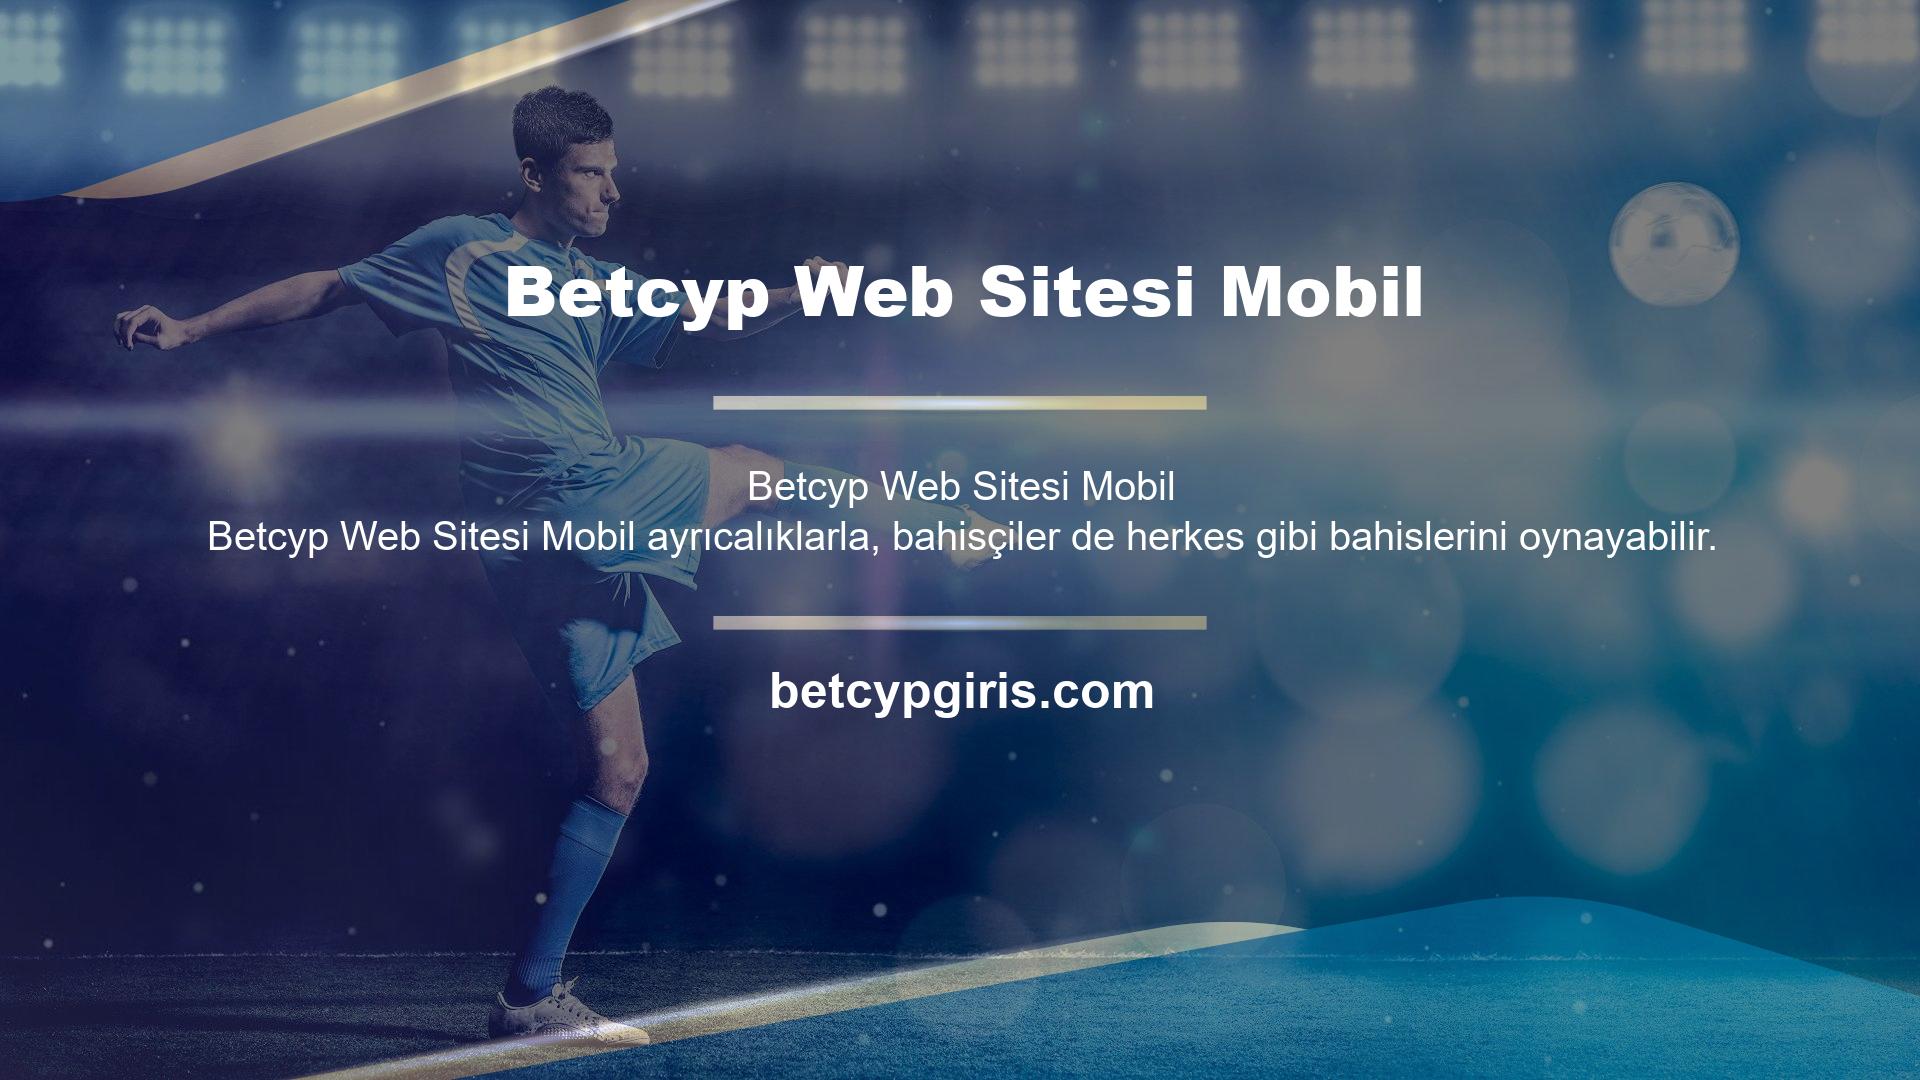 Bahisçiler, Betcyp web sitesindeki mobil tasarım seçeneği aracılığıyla cep telefonu ve tablet gibi seçenekleri takas edebilirler